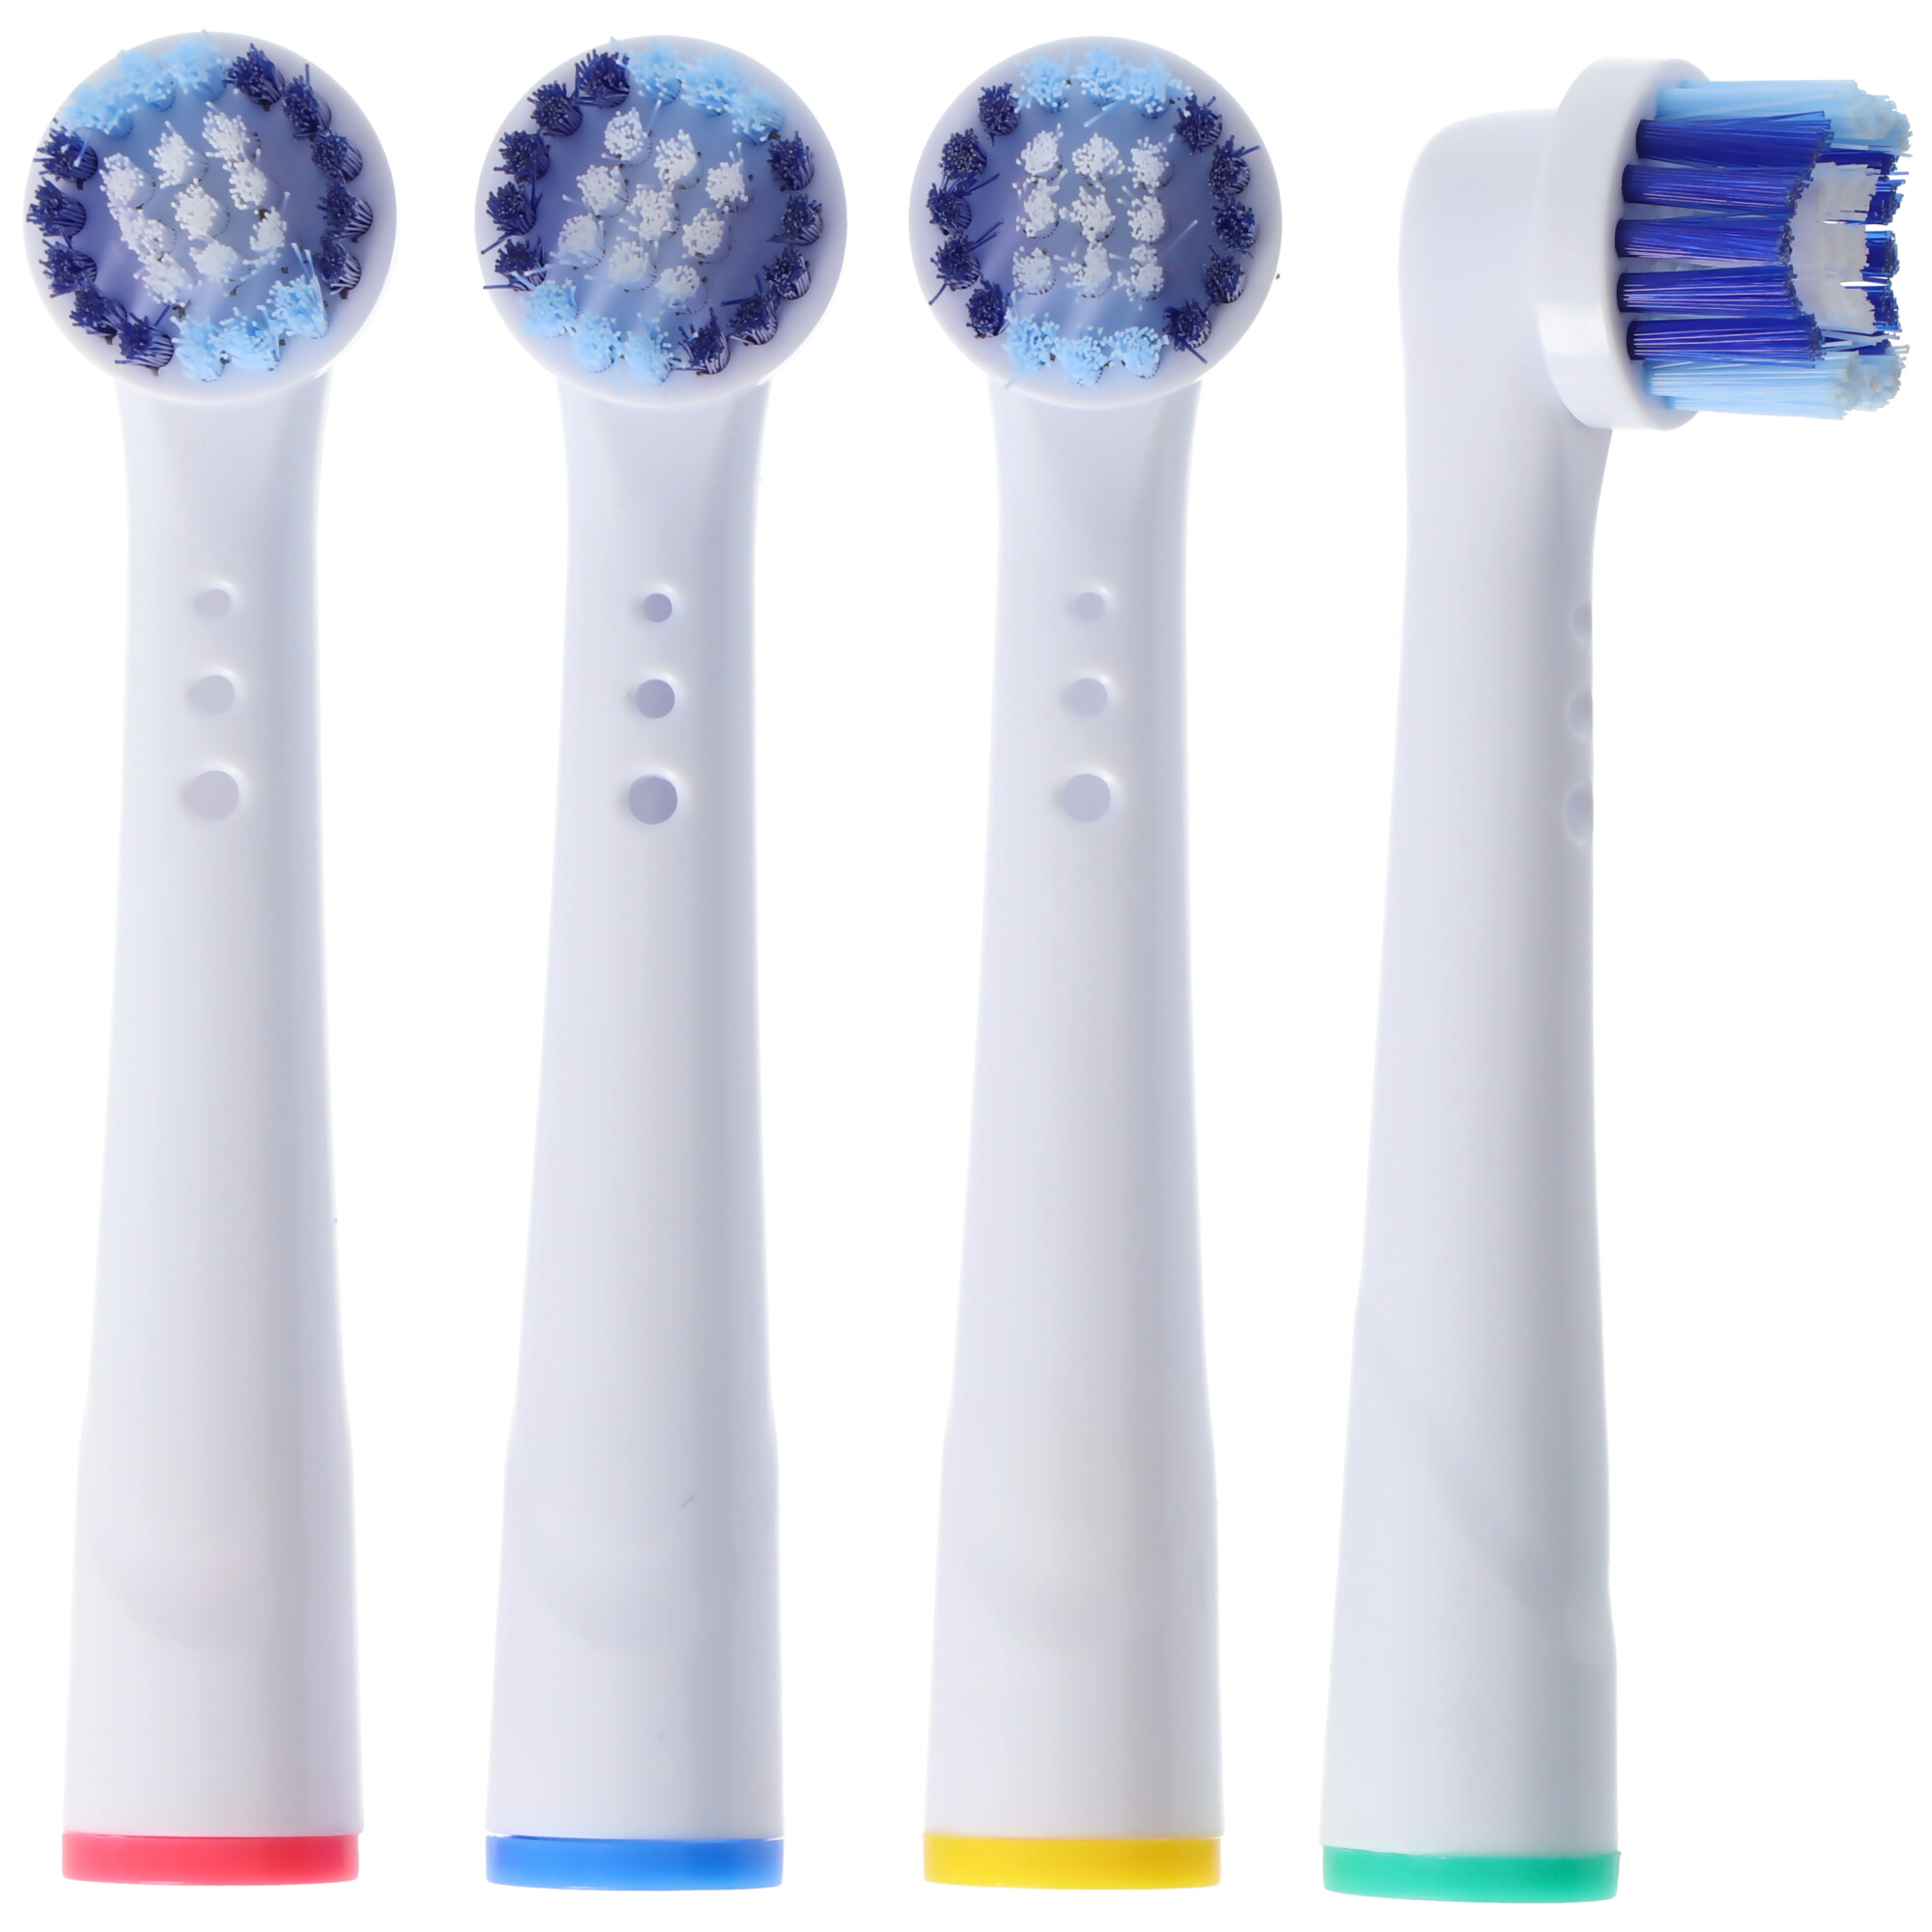 4 Stück Cleaning Brush V2 Ersatz-Zahnbürstenkopf für elektrische Zahnbürsten von Oral-B, passend z.B. für Oral-B D10, D12, D16, D12 und viele andere Modelle von Oral-B